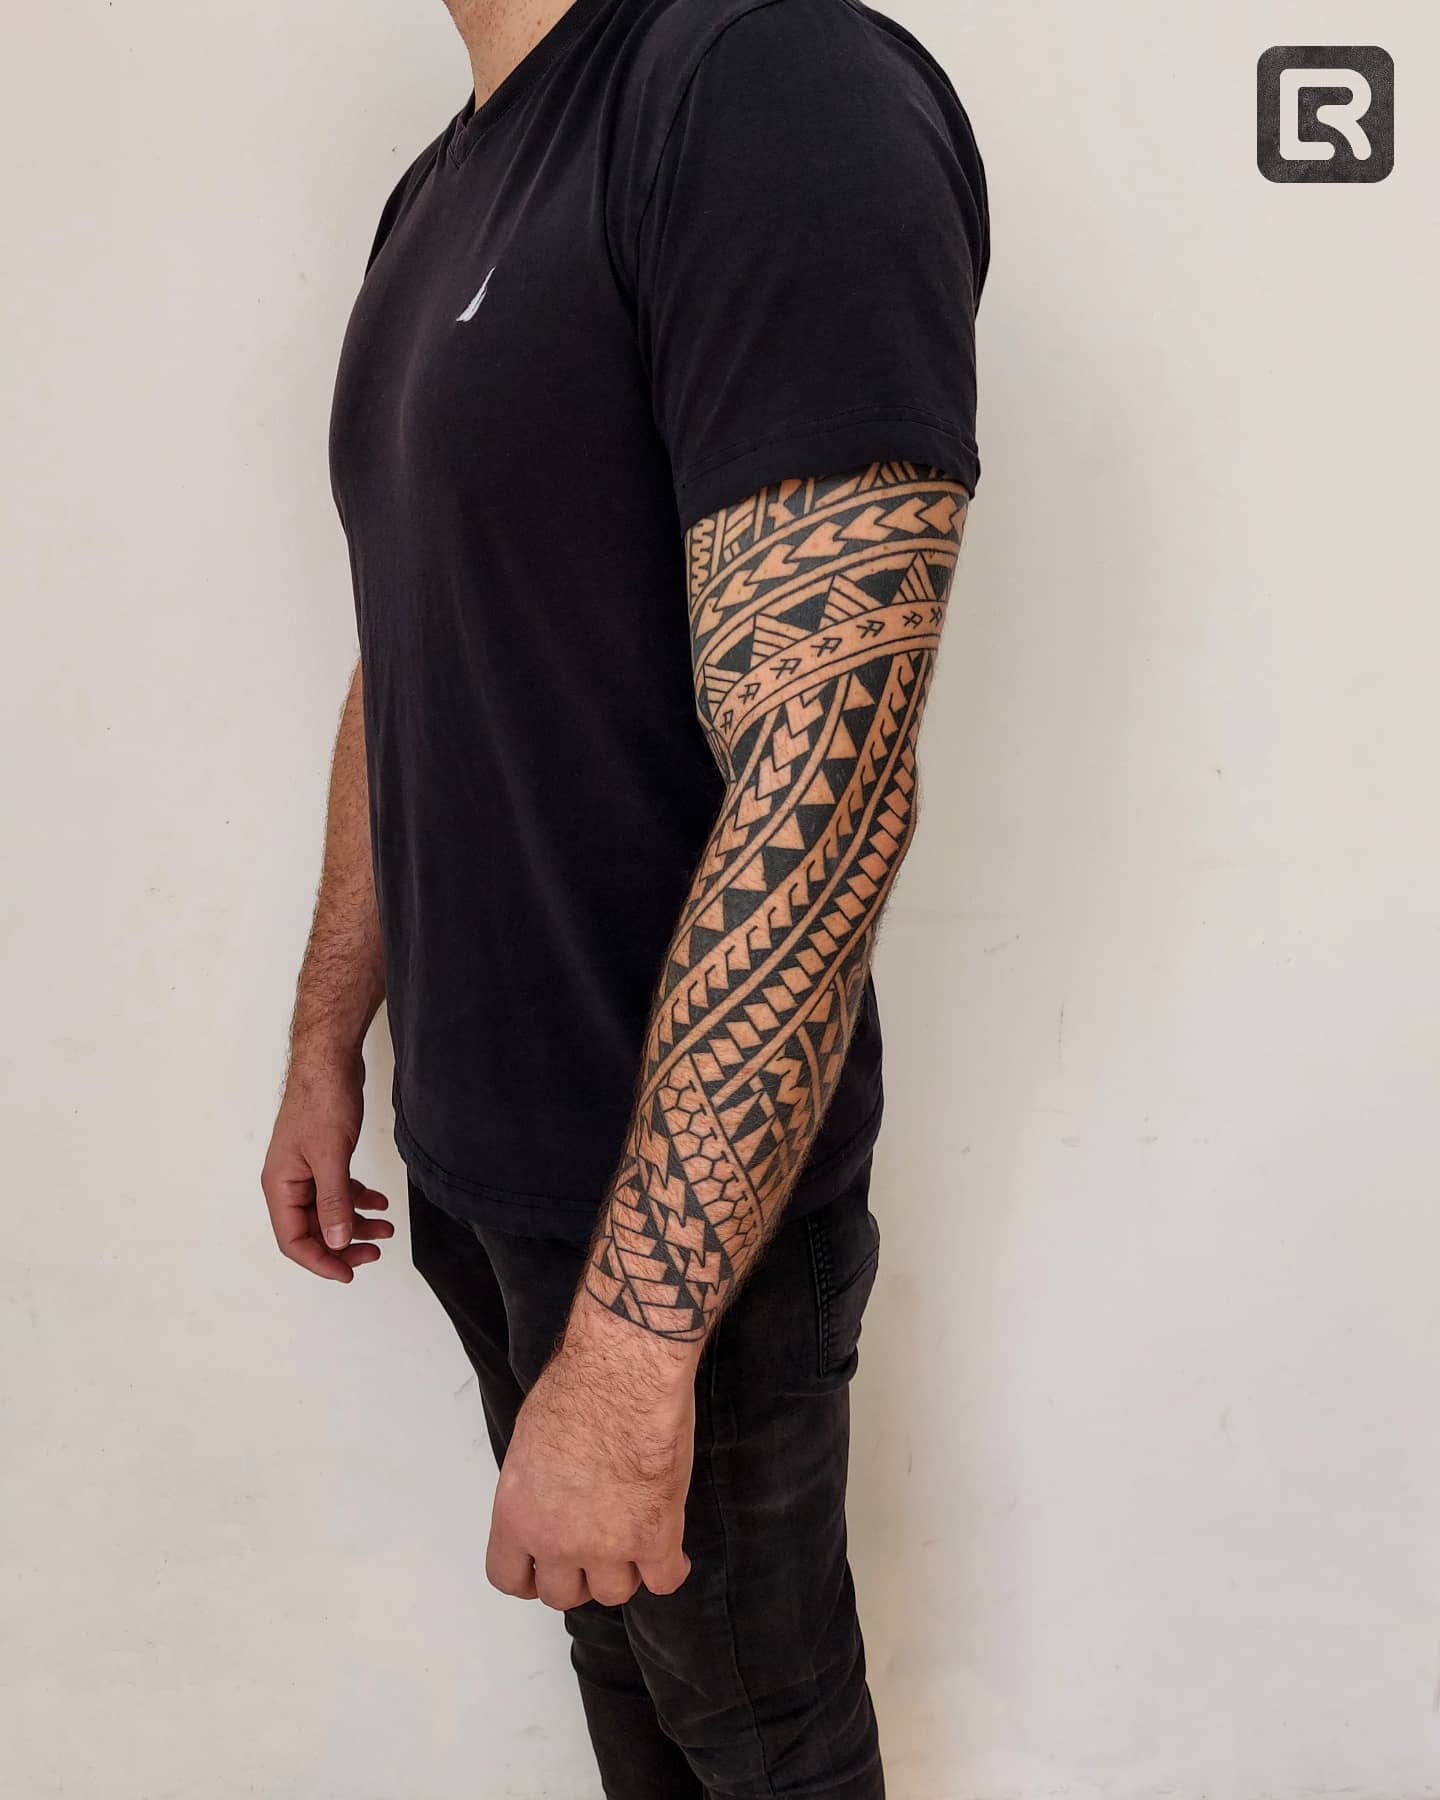 Patrón de tatuaje samoano sobre el brazo.